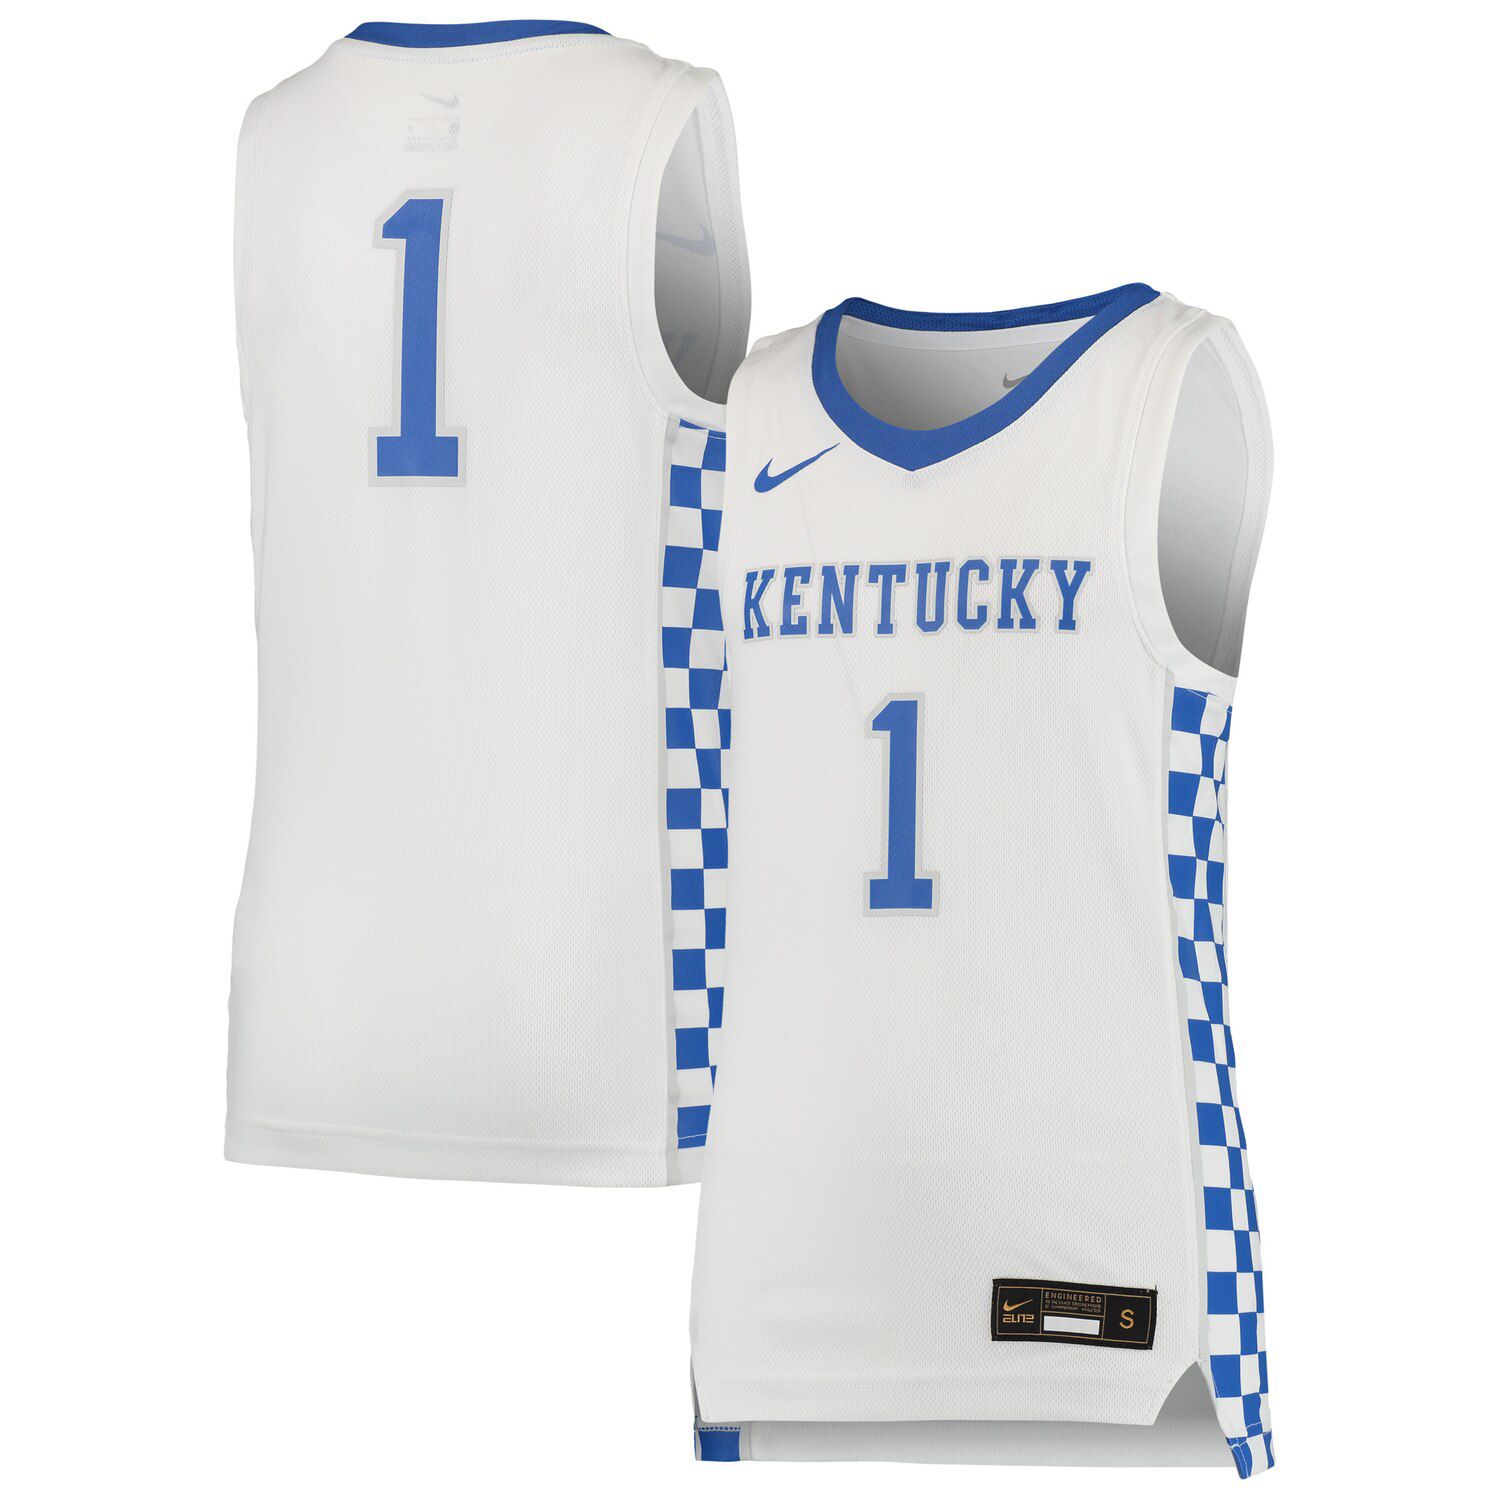 Kentucky Wildcats basketball jersey sale